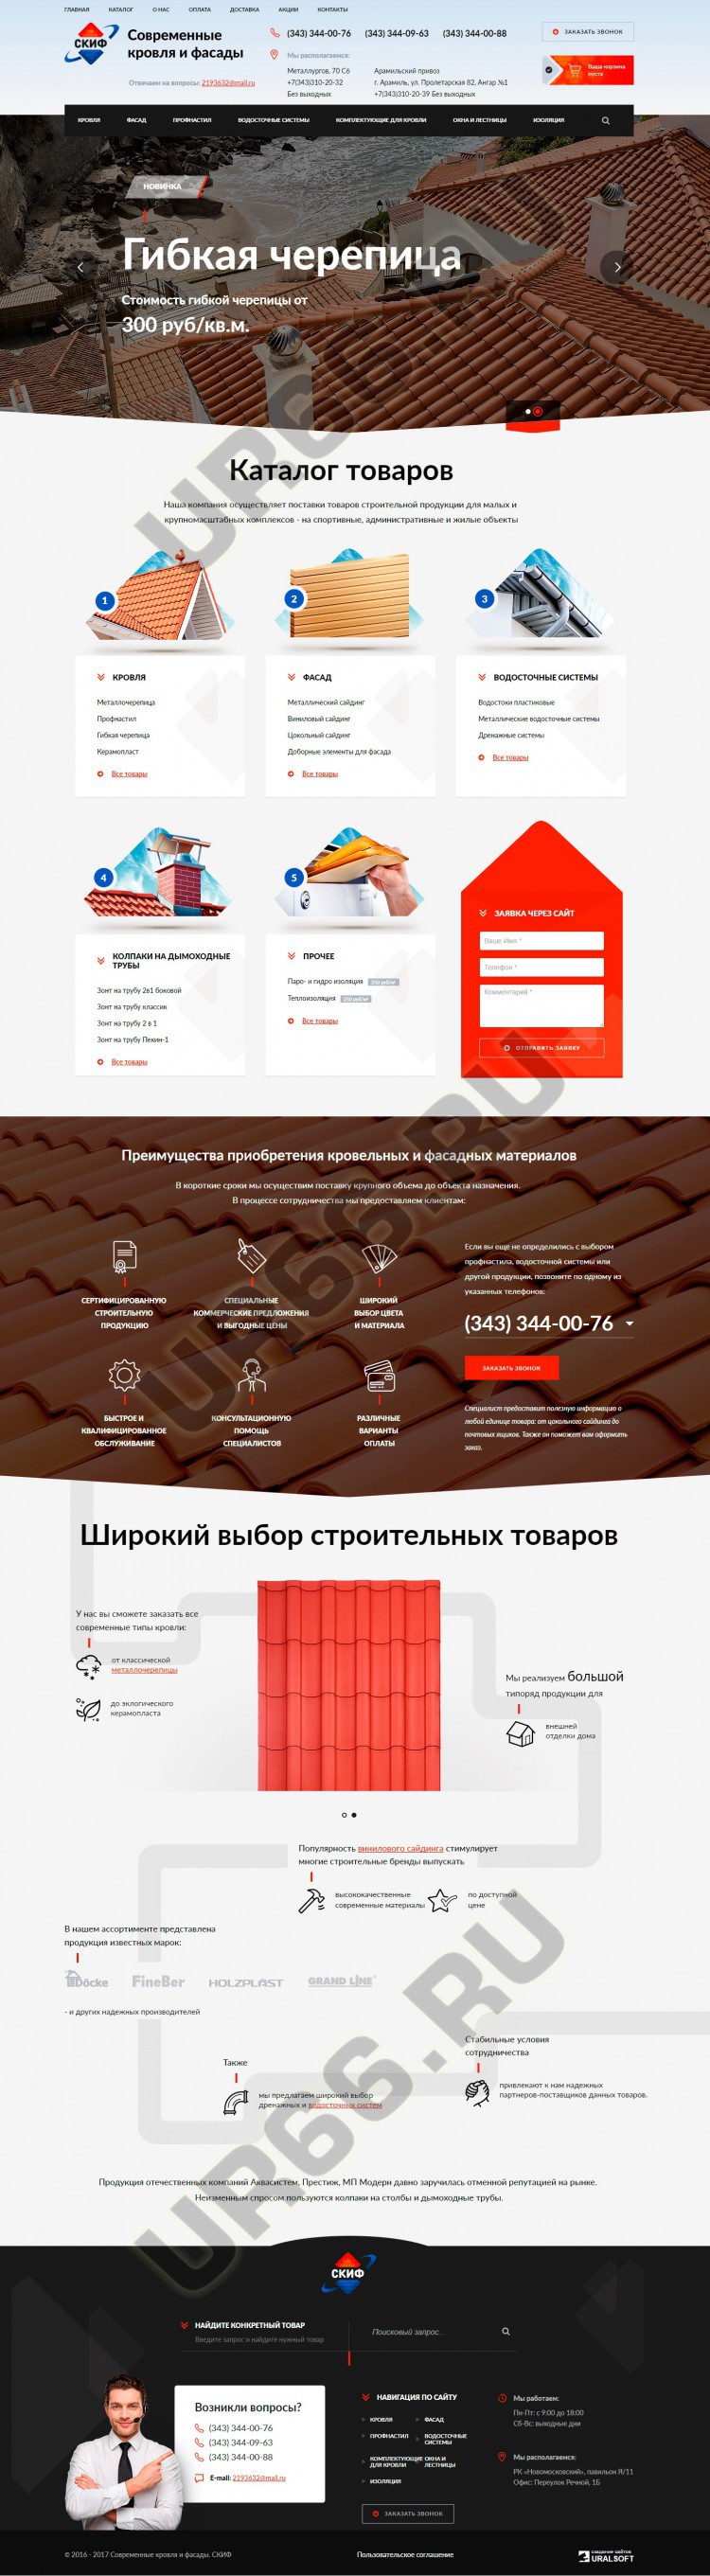 Интернет-магазин строительных материалов «Скиф», skifstroy96.ru, 2016 год - UR66.RU, Екатеринбург